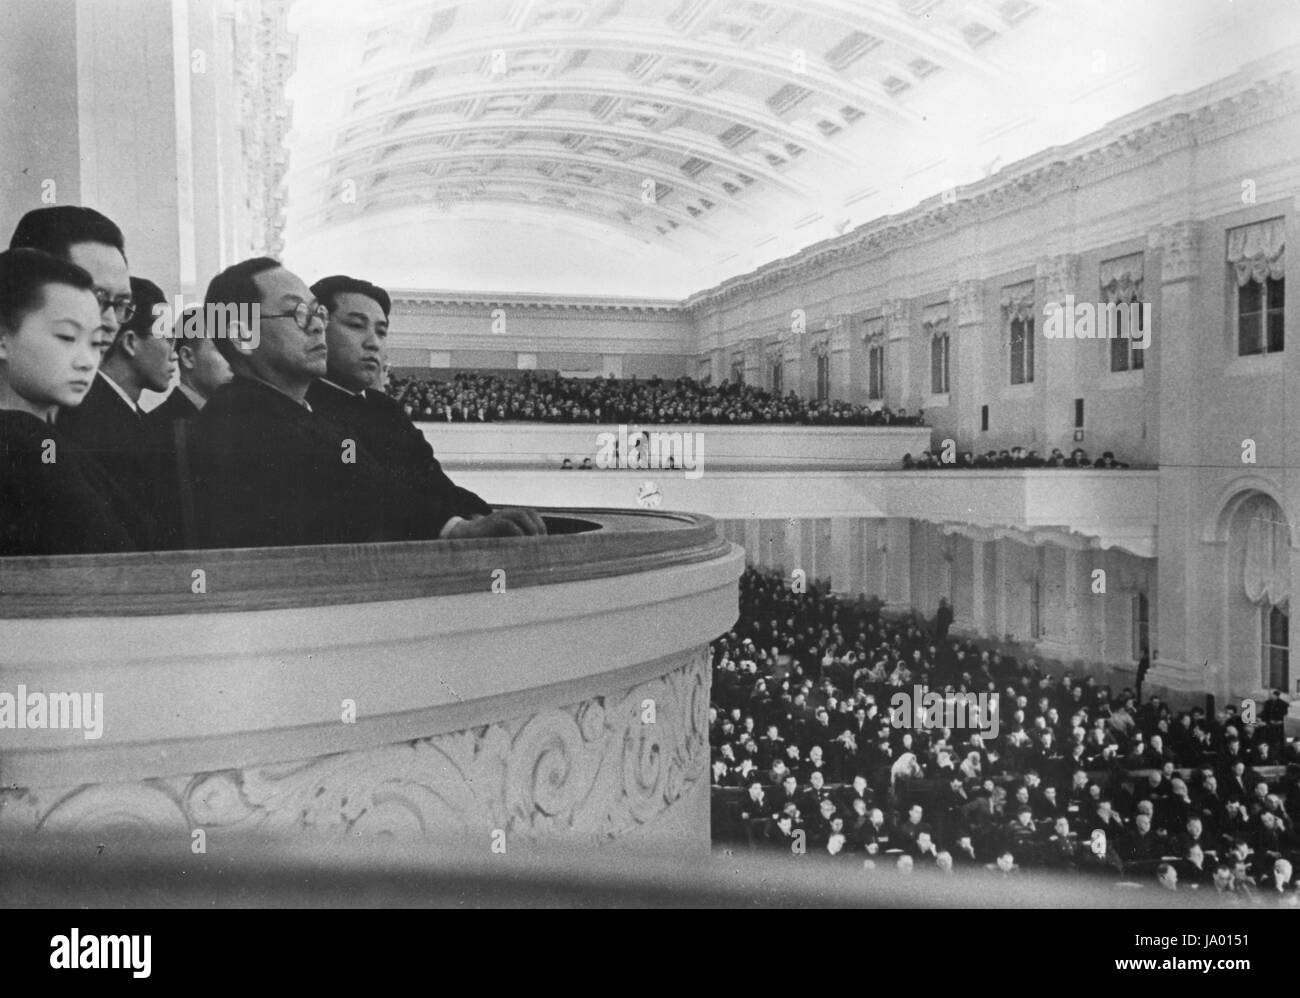 Kim Il-Sung (parte posteriore destra), coreano leader comunista, si siede con la delegazione coreana alla quinta sessione del Soviet Supremo dell' URSS, Mosca, URSS, 03/01/1949. Foto Stock